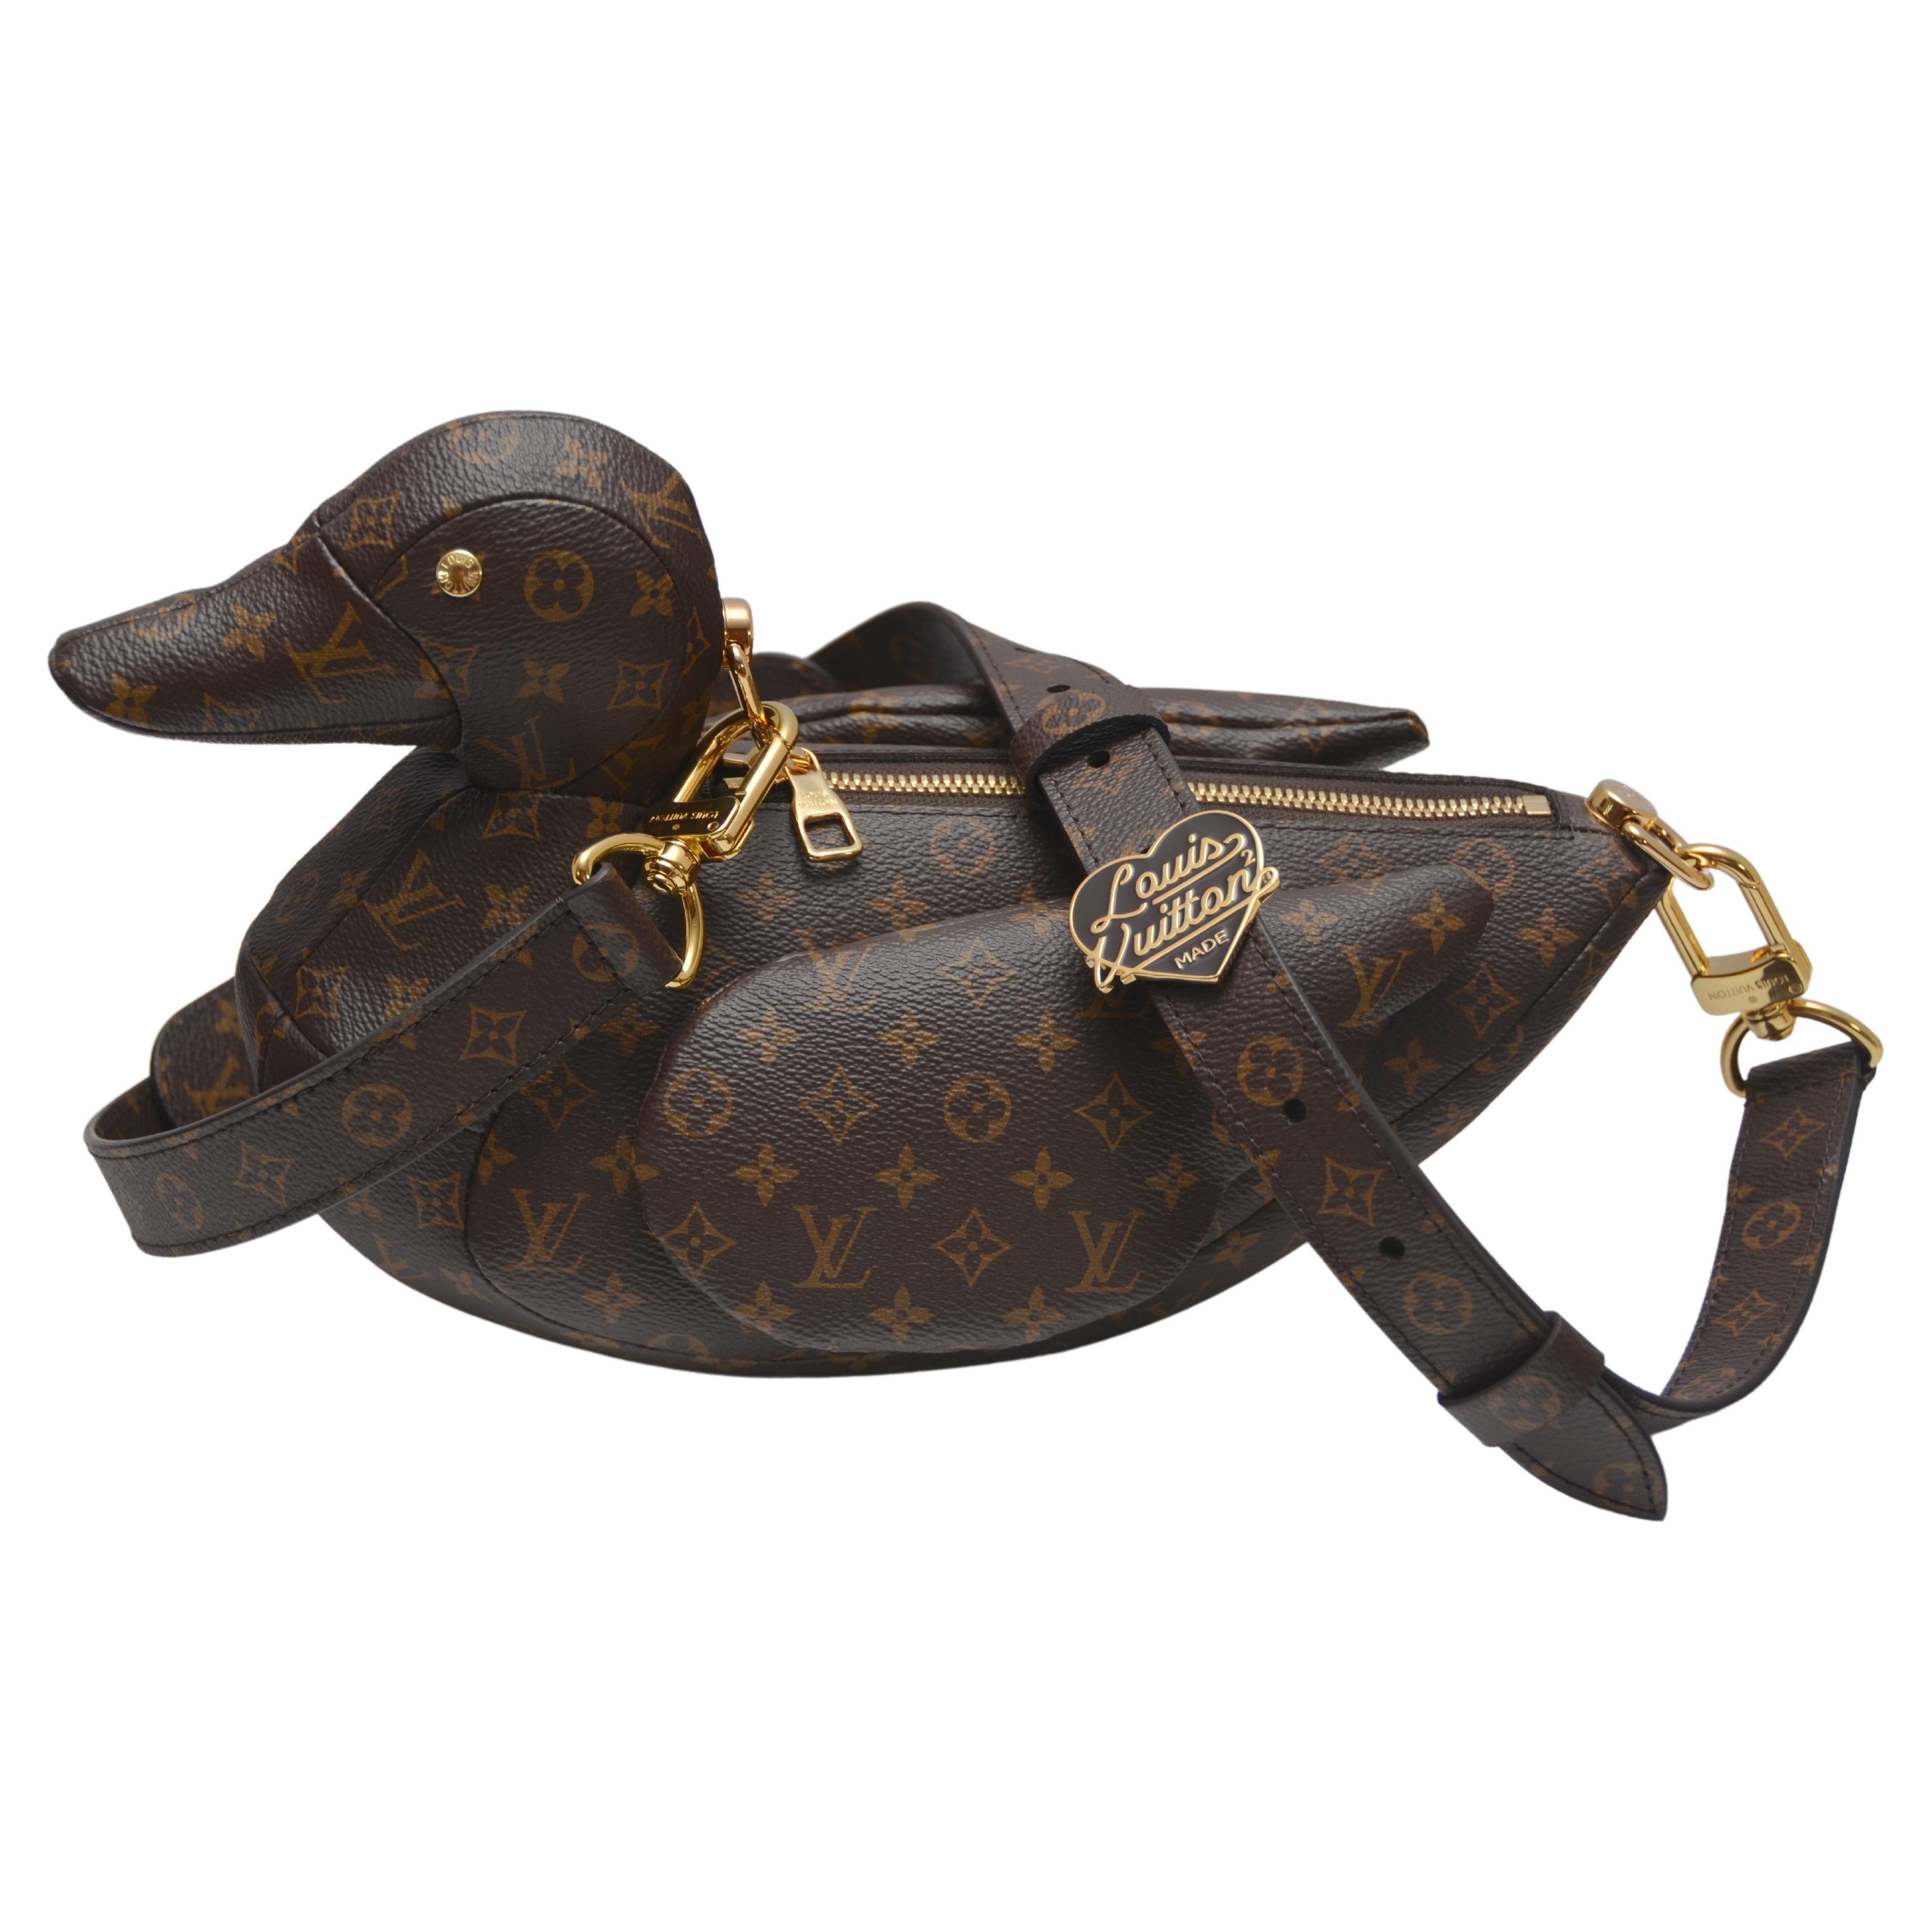 Duck handbag